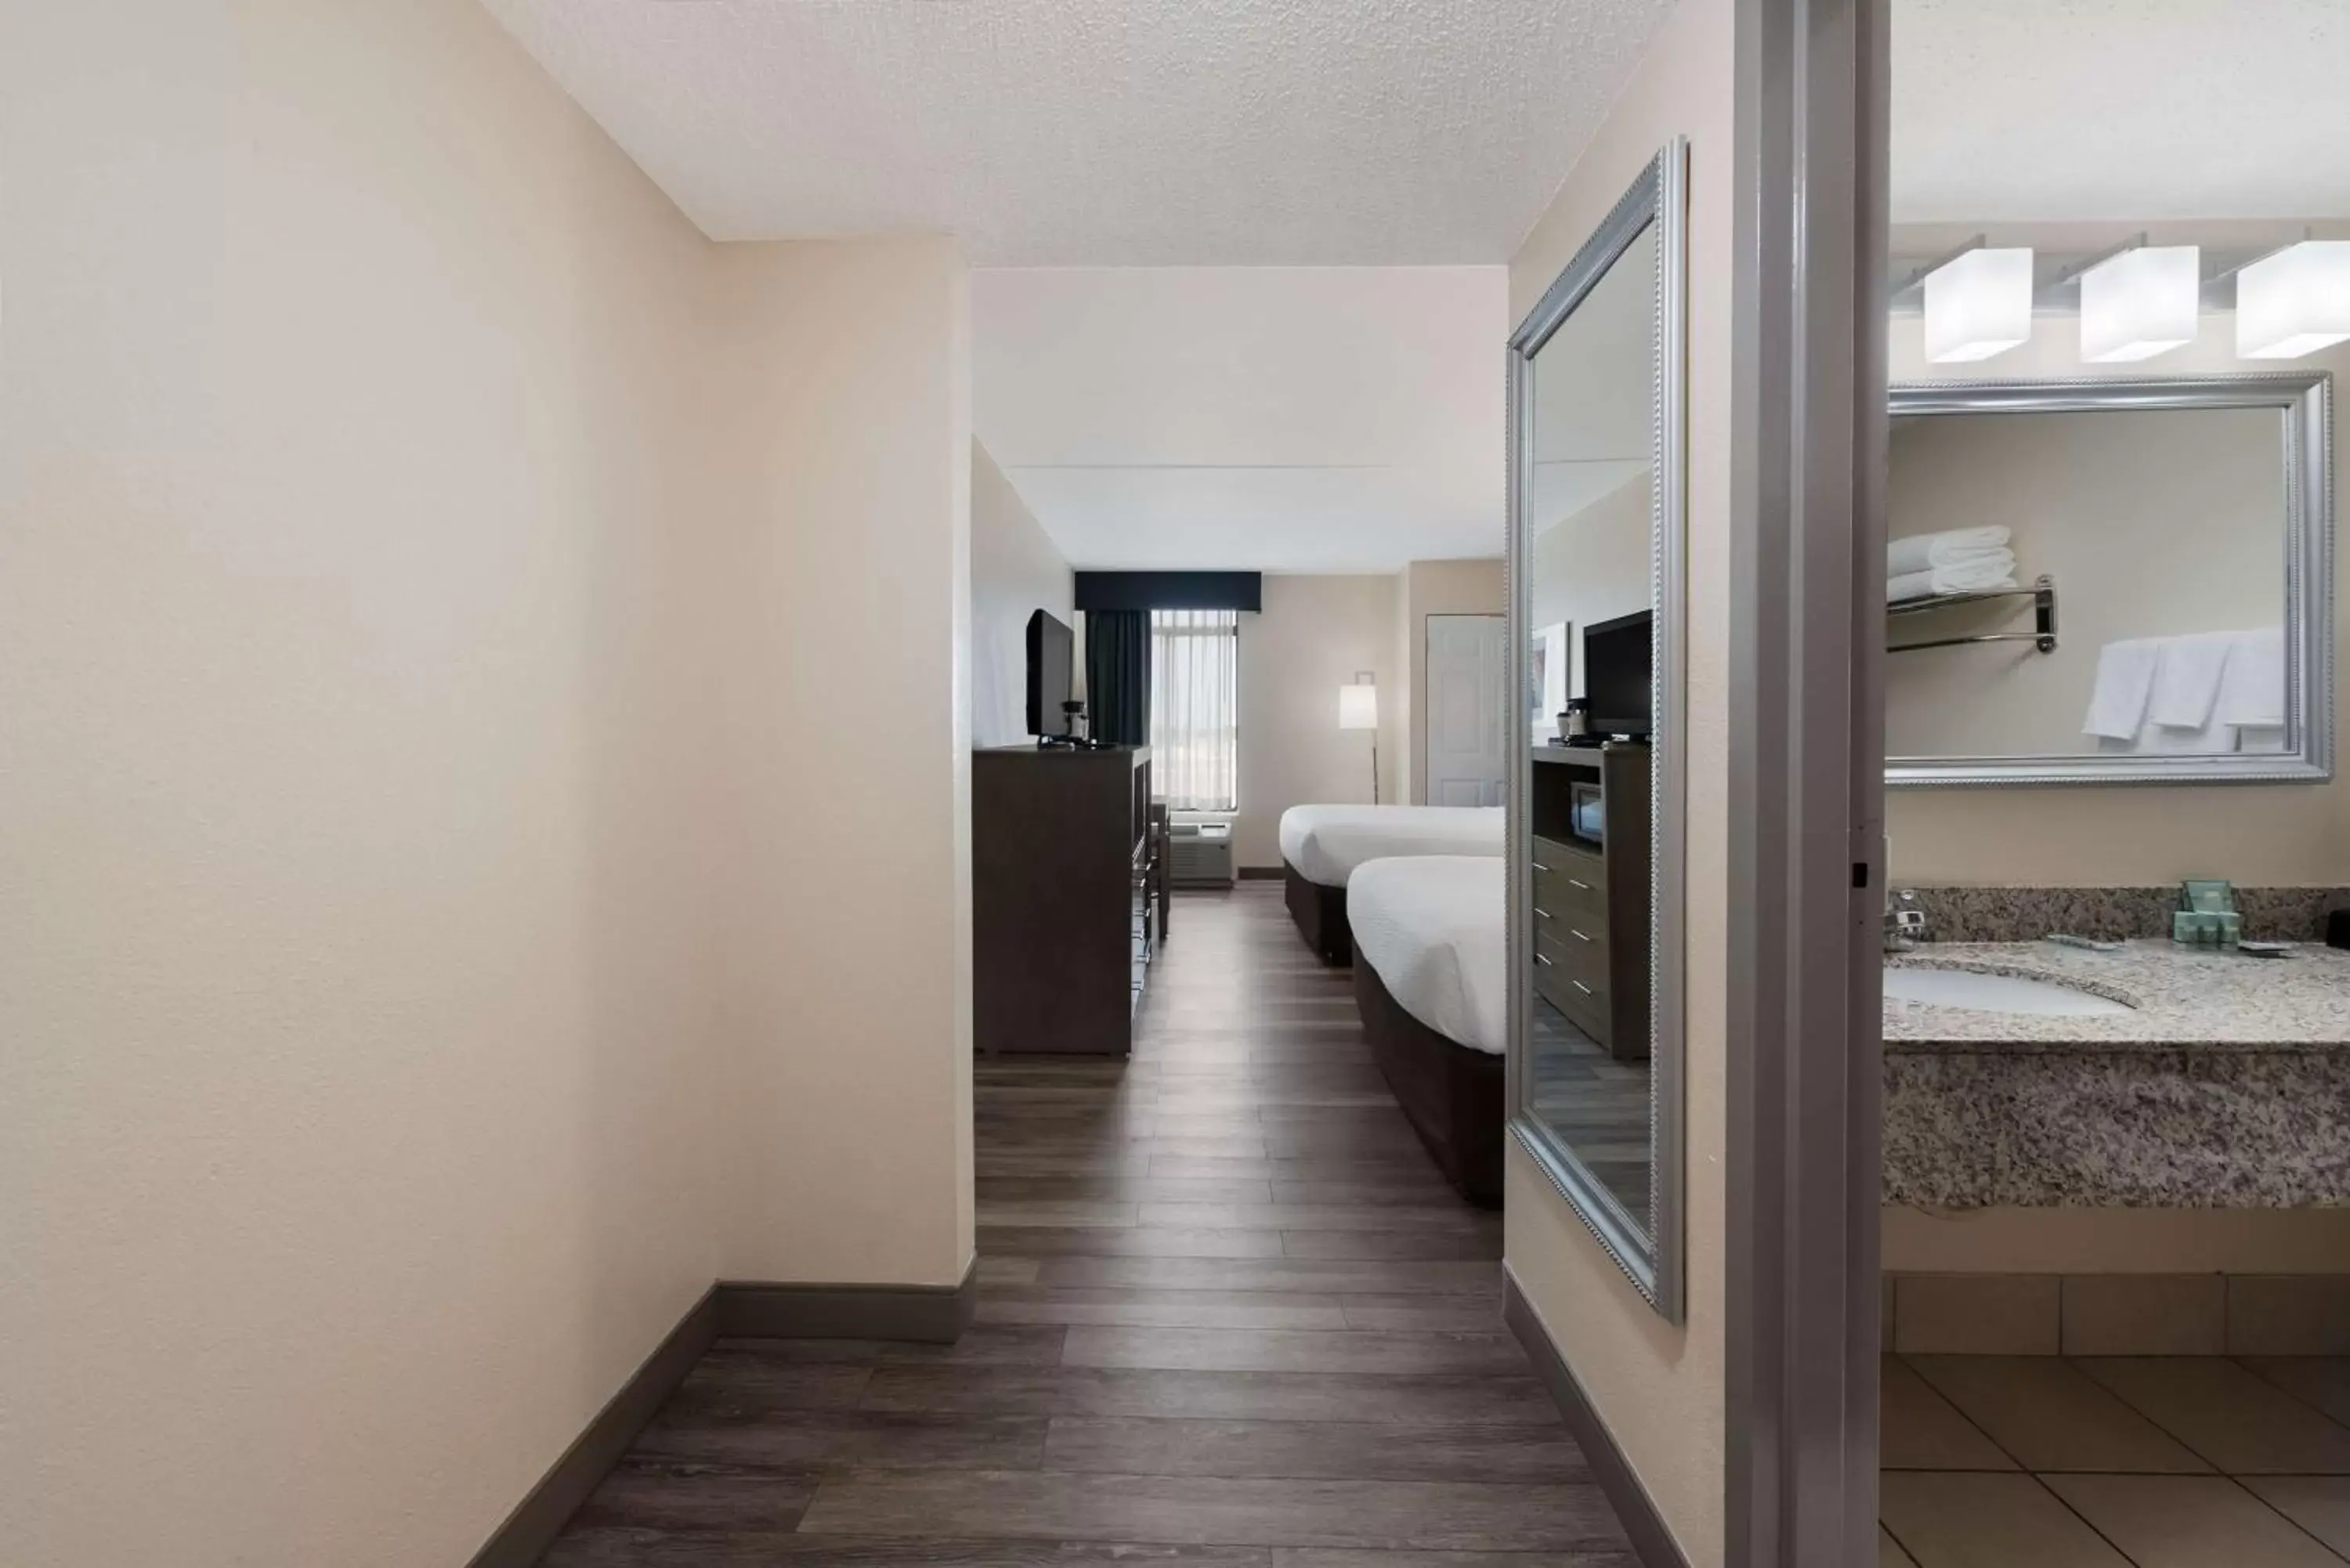 Bedroom, Bathroom in Best Western Hampton Coliseum Inn